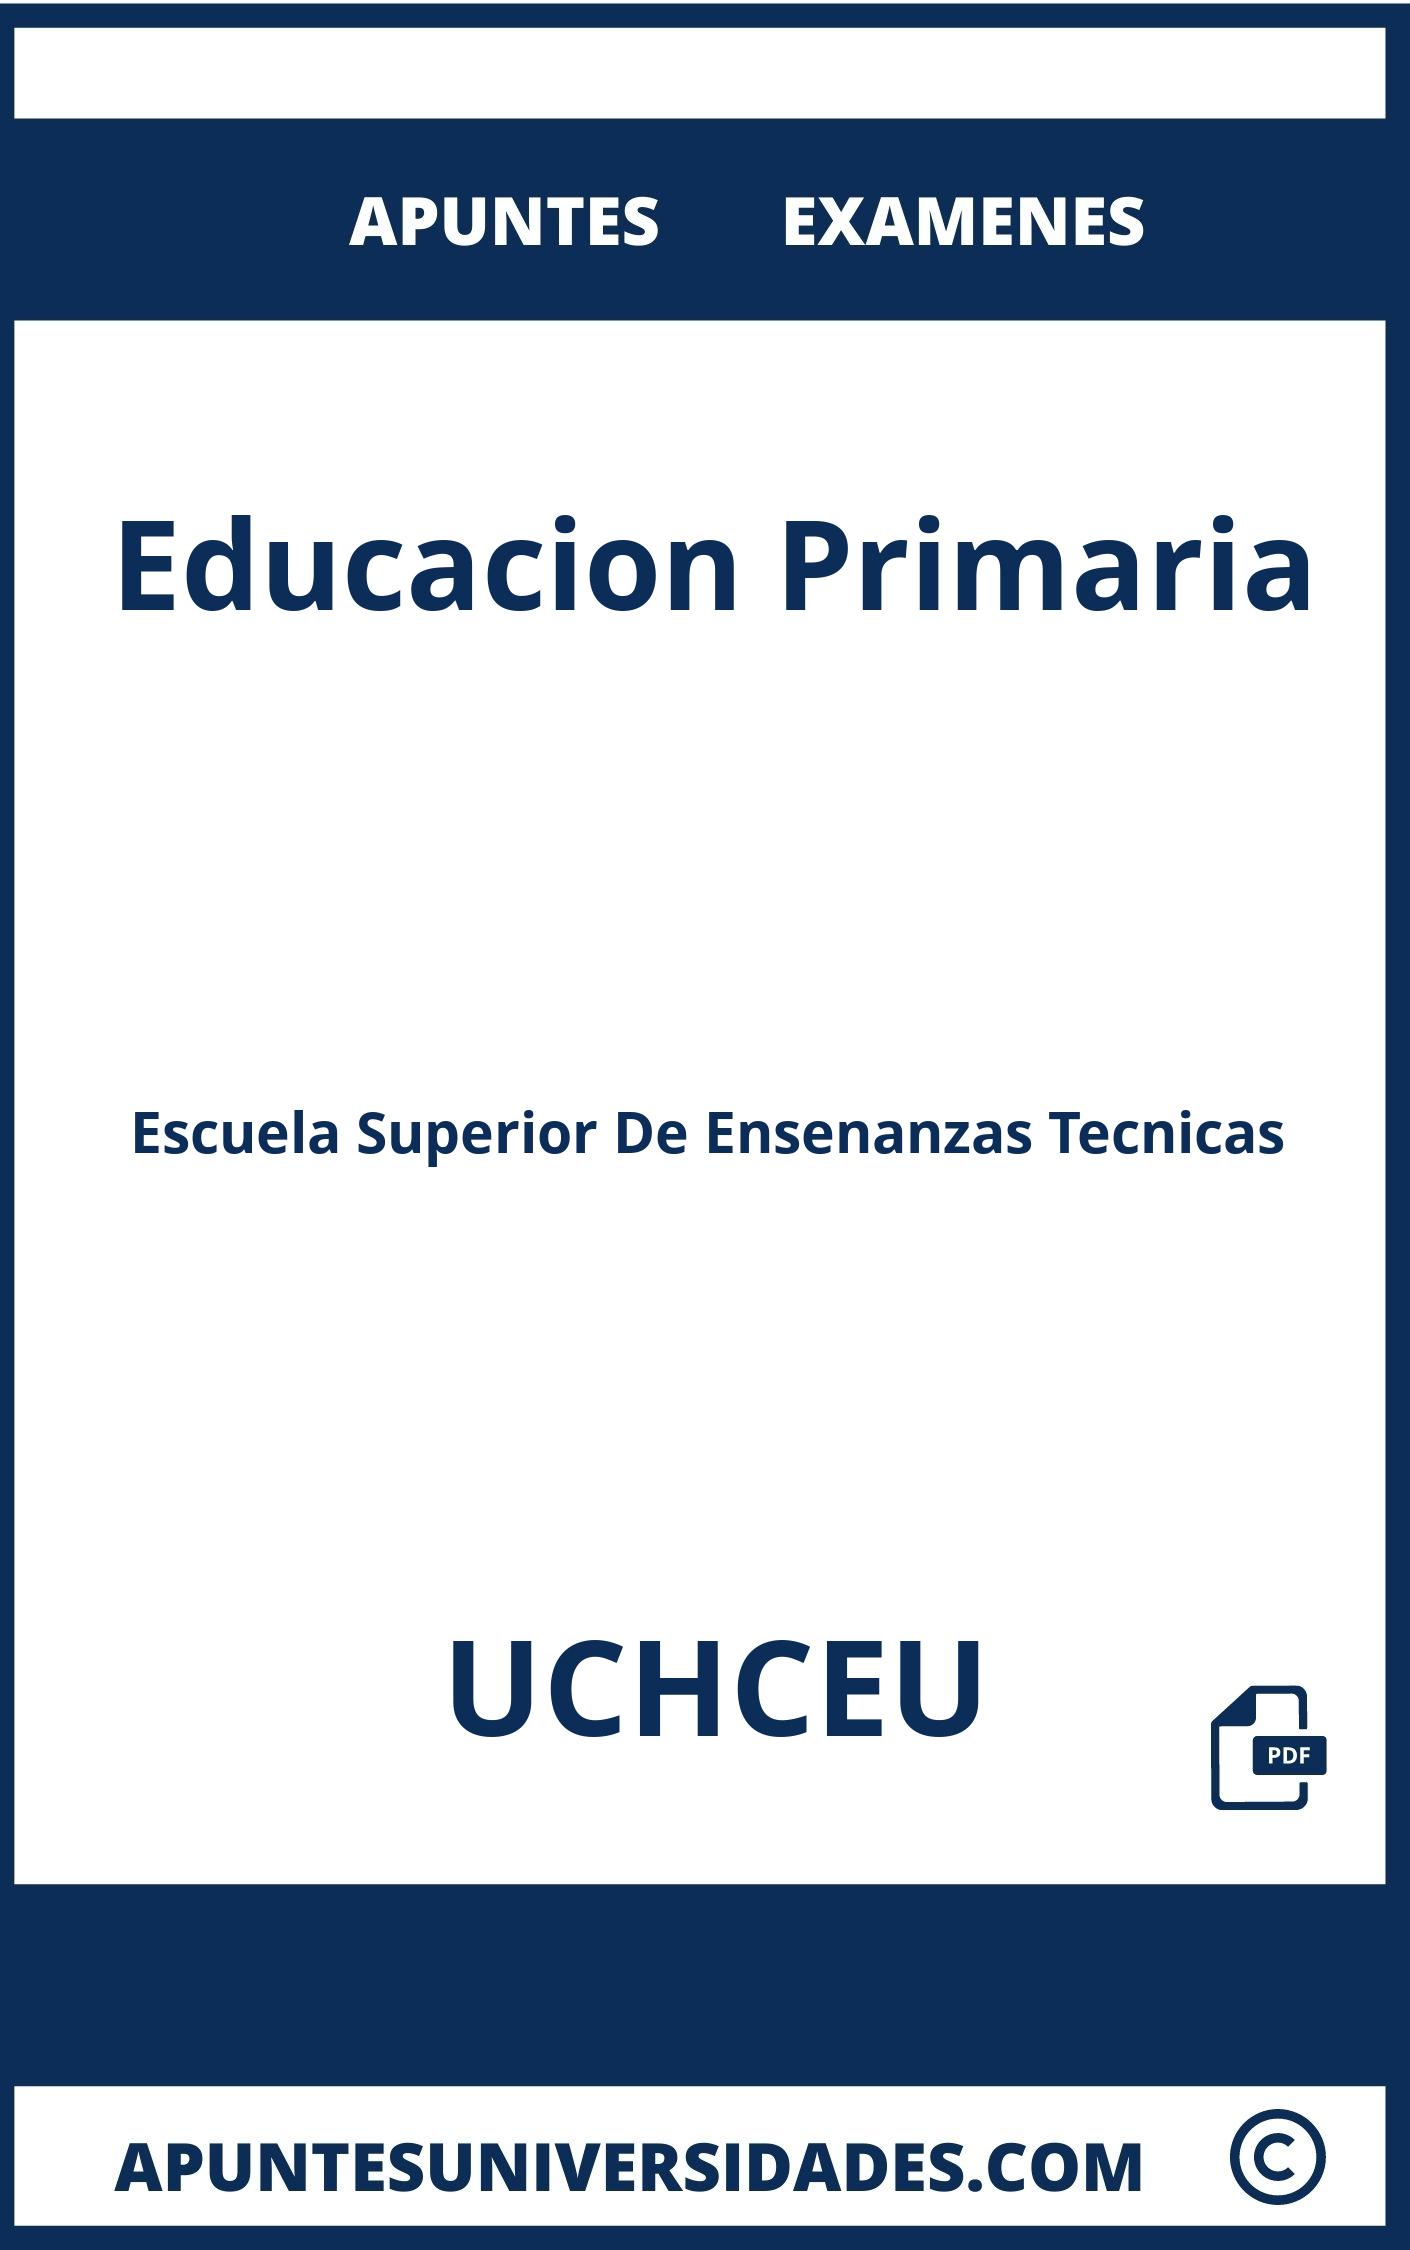 Apuntes Educacion Primaria UCHCEU y Examenes